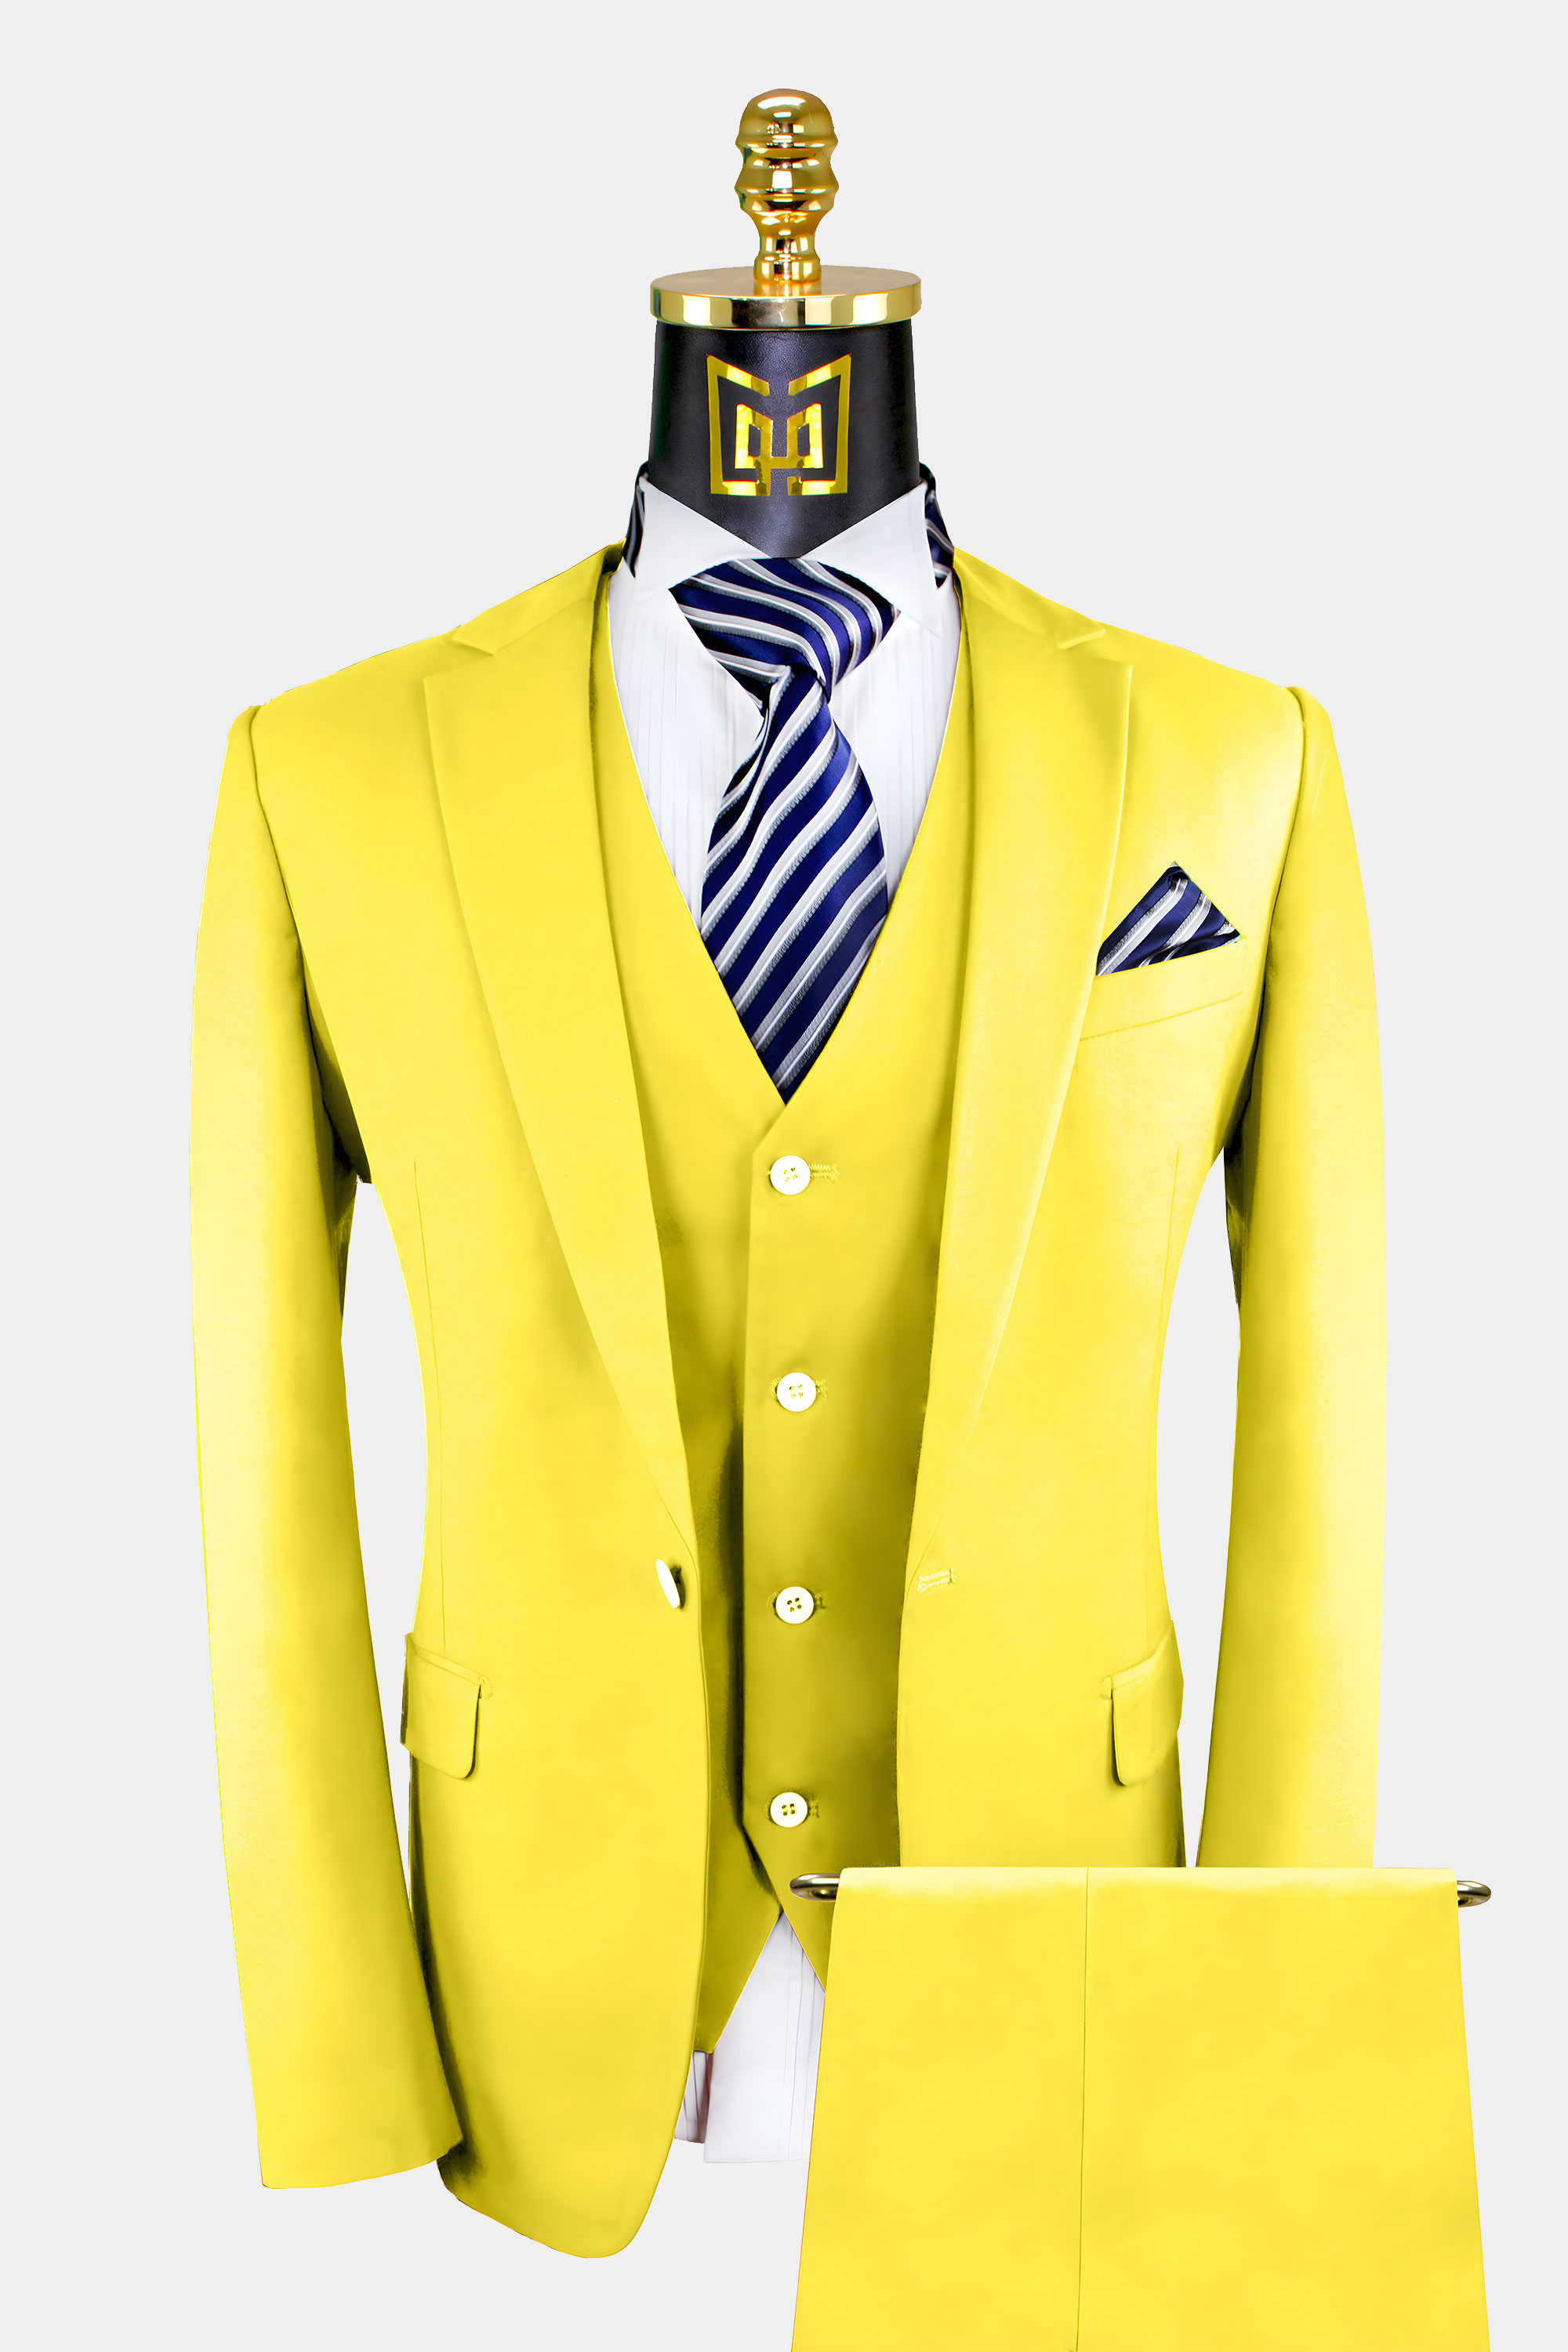 Mens-Yellow-Suit-Wedding-Groom-Prom-Tuxedo-from-Gentlemansguru.com